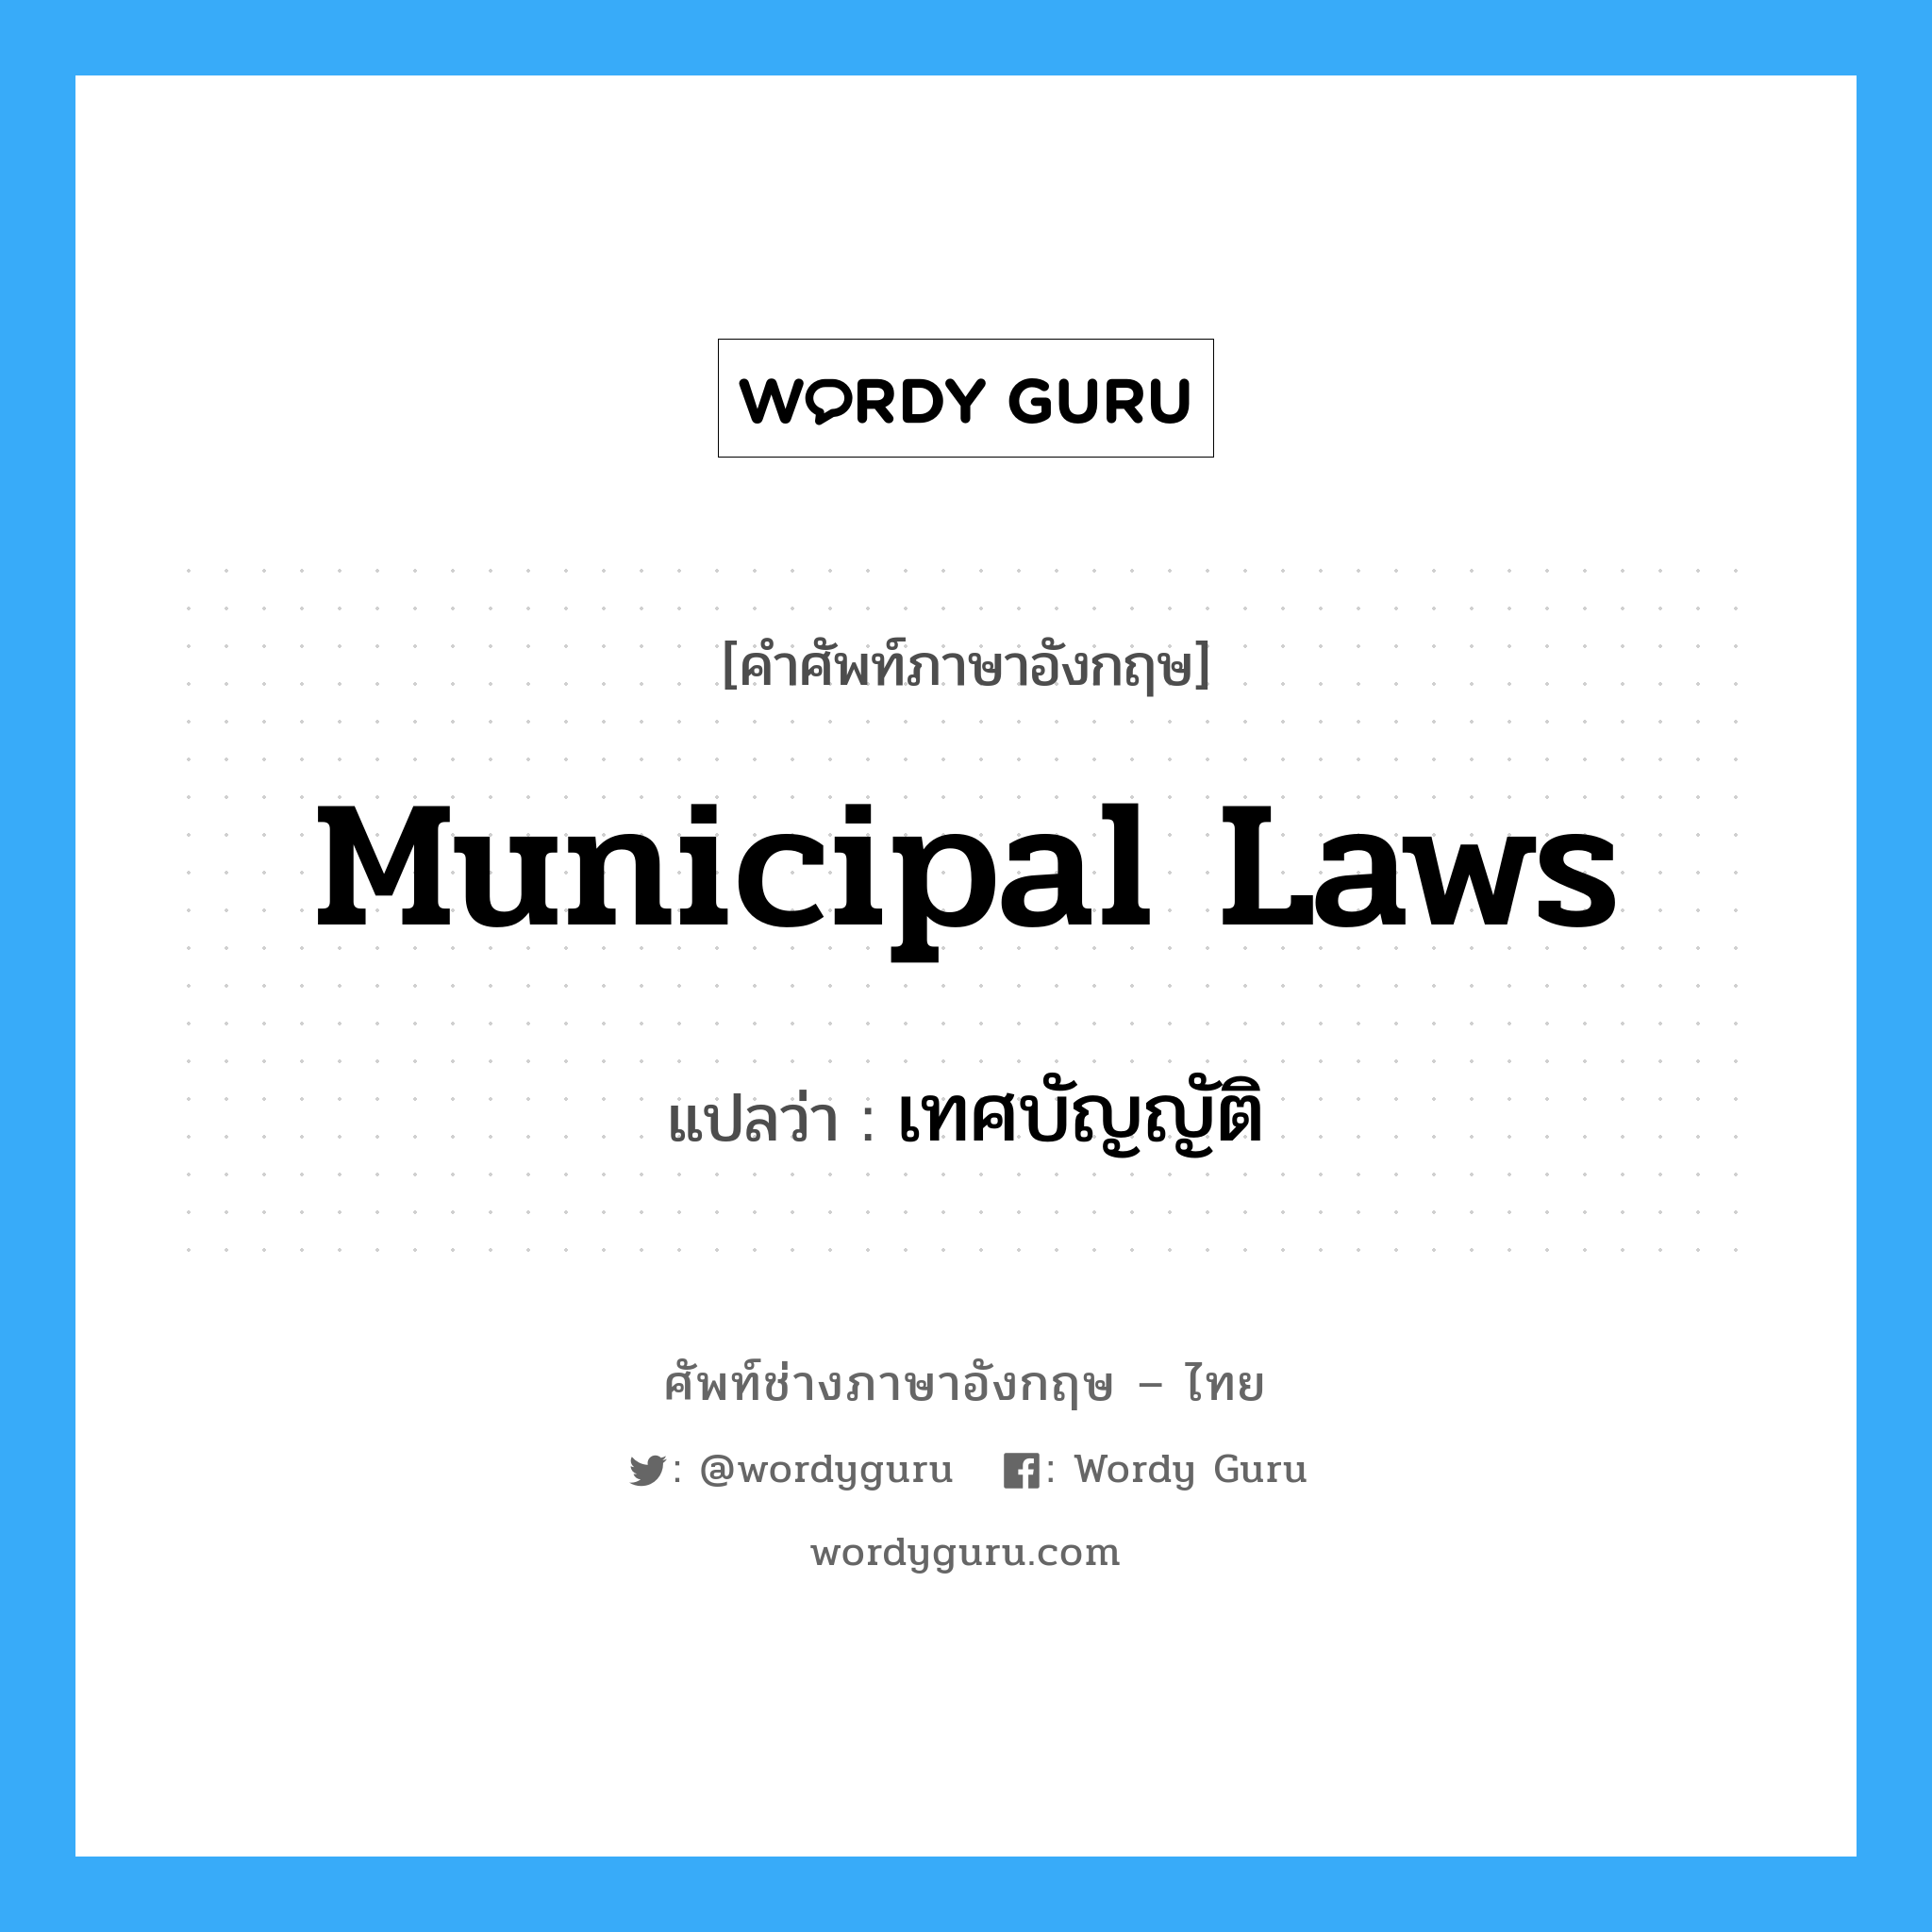 เทศบัญญัติ ภาษาอังกฤษ?, คำศัพท์ช่างภาษาอังกฤษ - ไทย เทศบัญญัติ คำศัพท์ภาษาอังกฤษ เทศบัญญัติ แปลว่า Municipal Laws